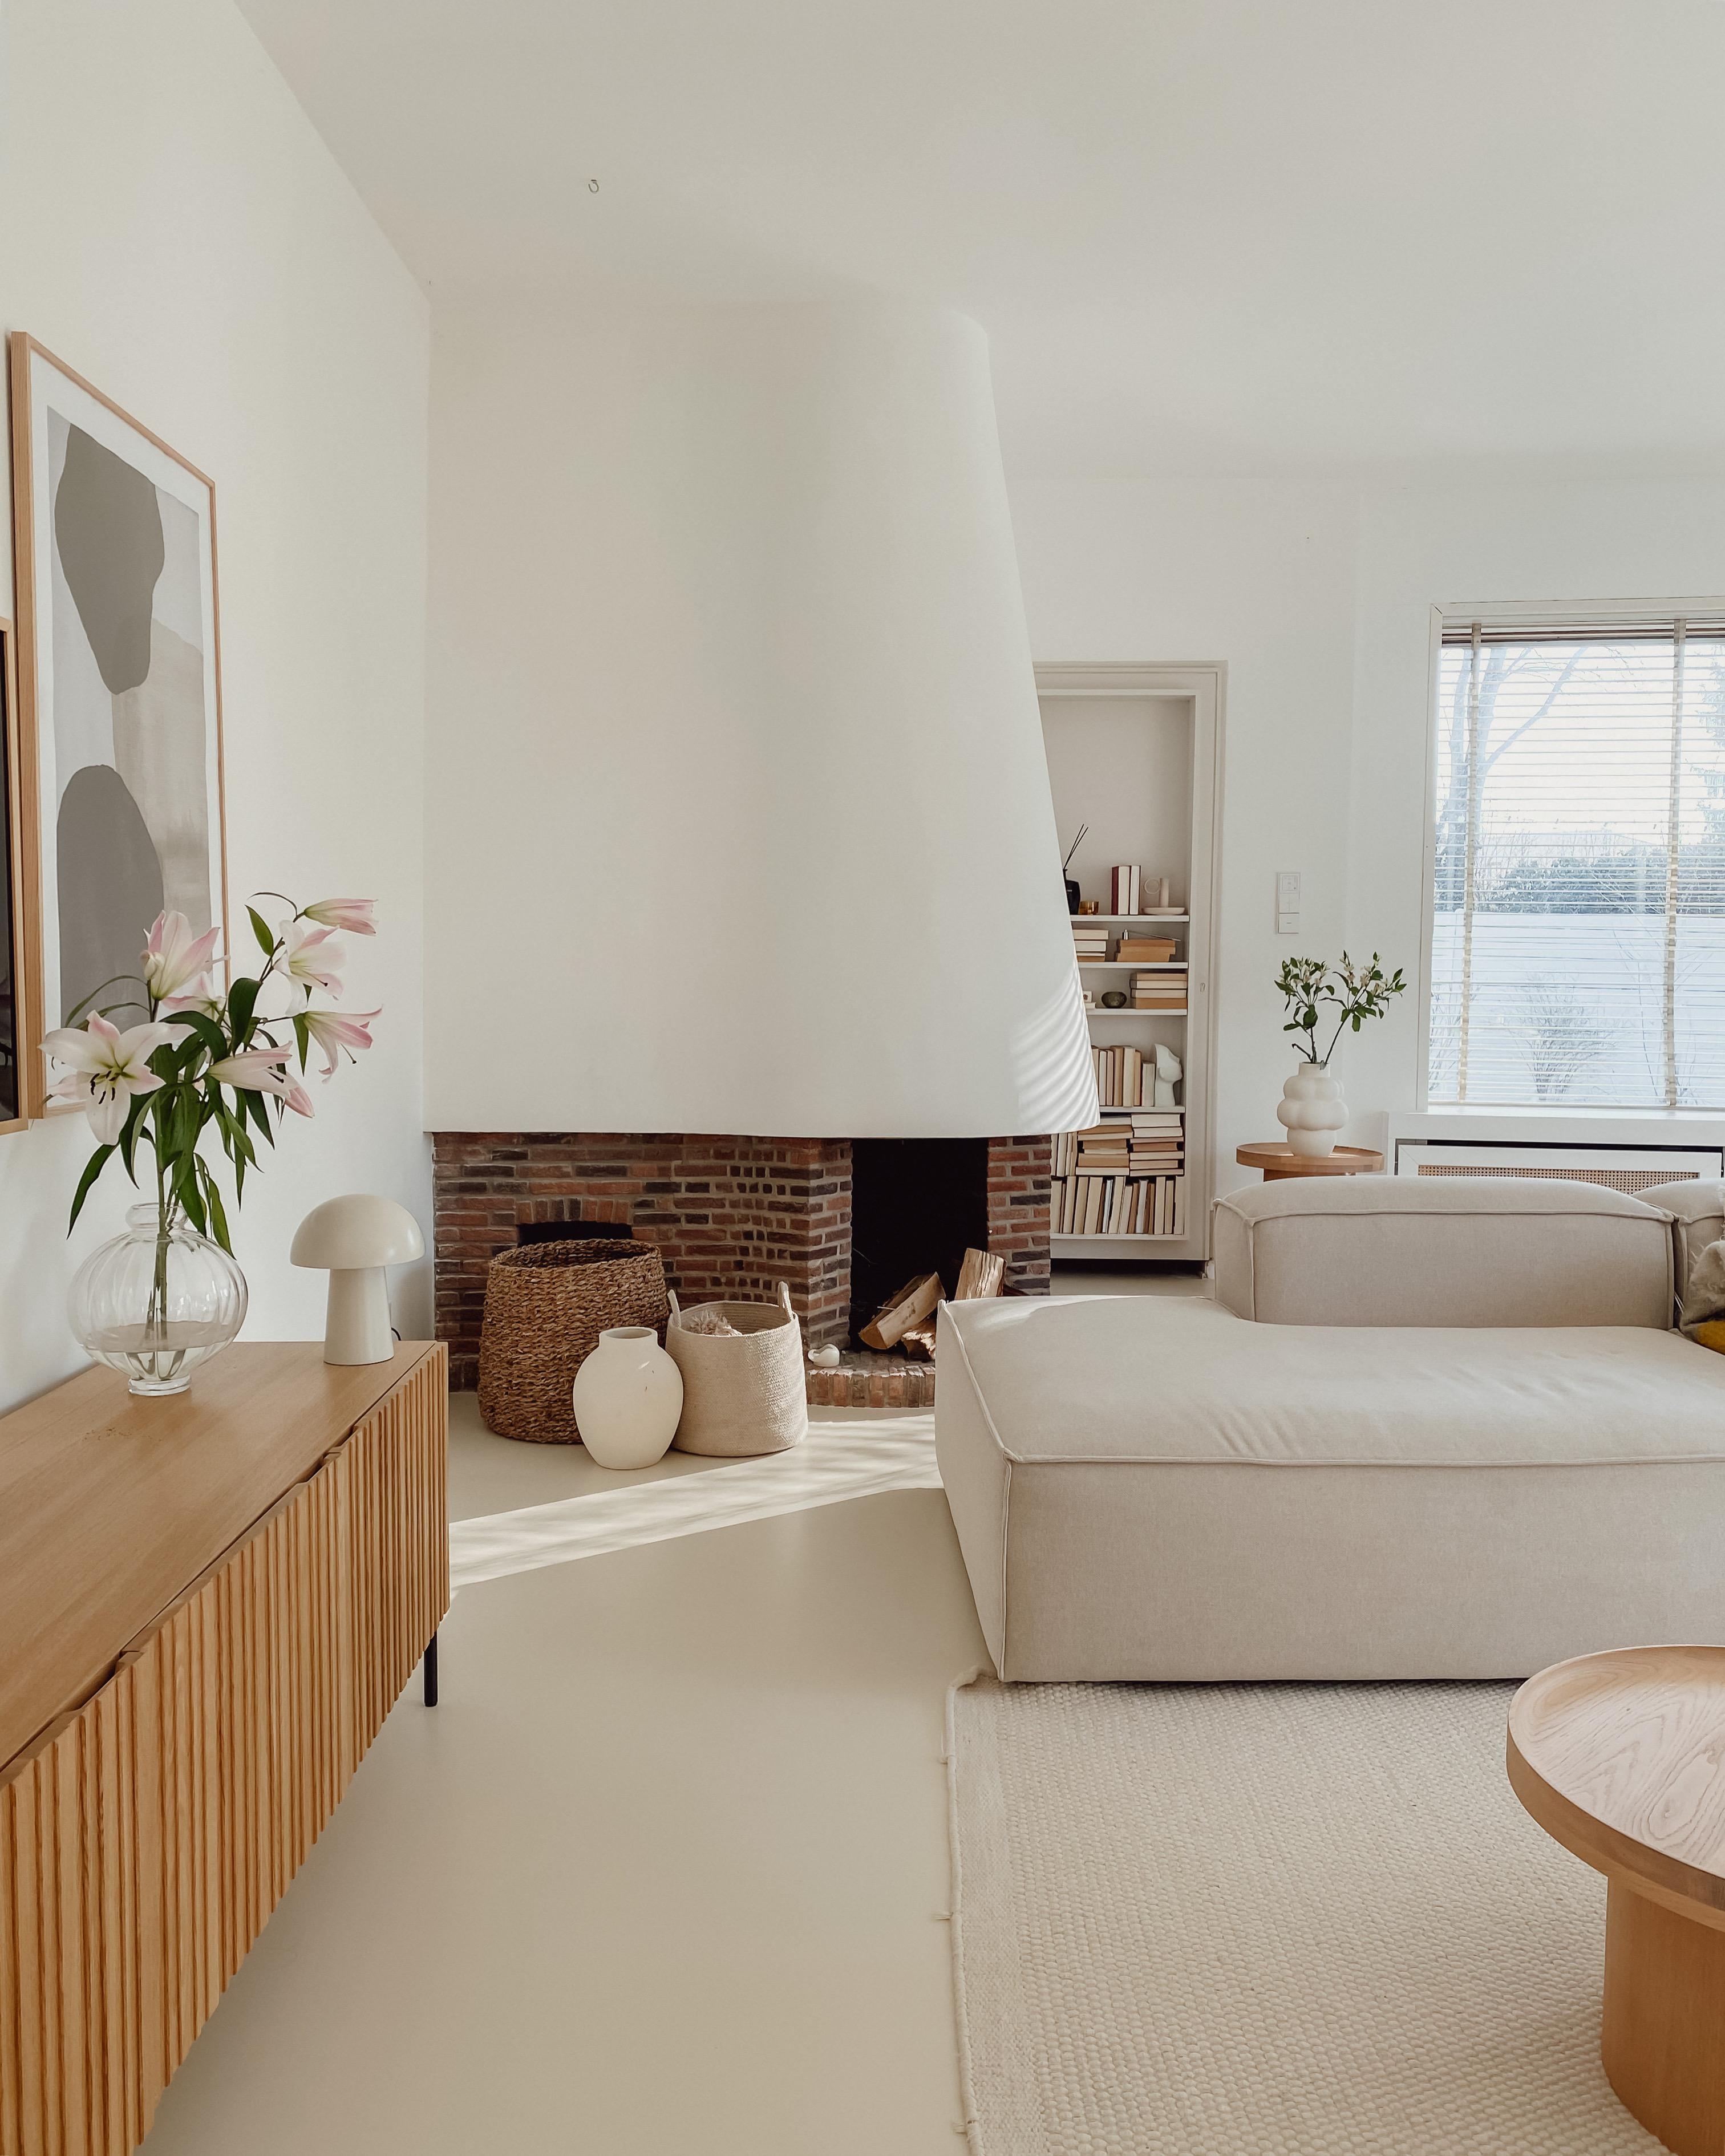 #wohnzimmer #kamin #couch #beige #interior #couchliebt #minimal #toninton #gussboden 